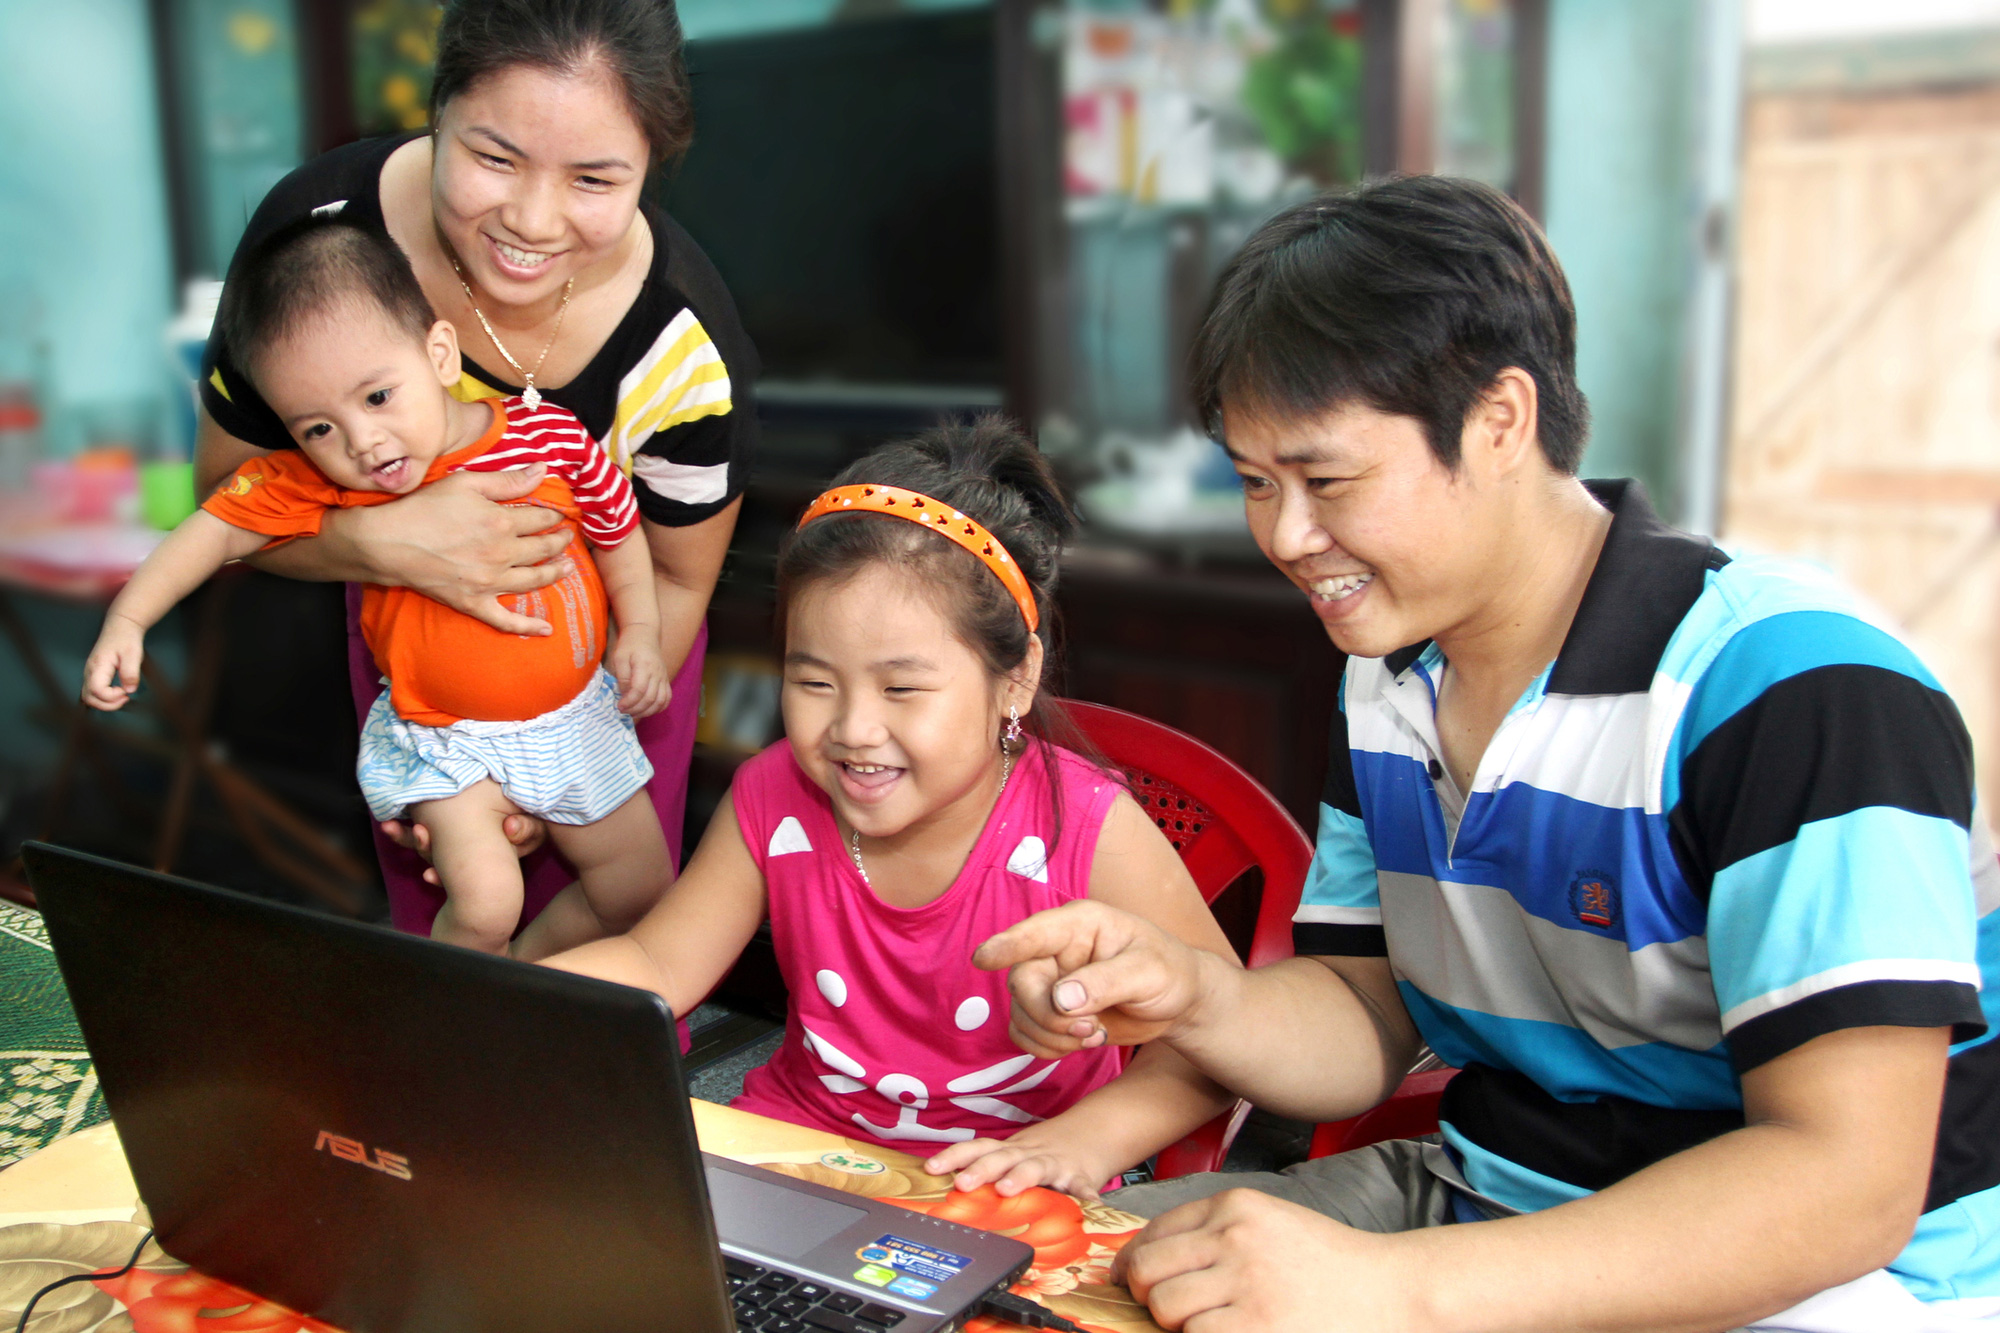 Gia đình Việt Nam là biểu tượng tình yêu và đoàn kết. Hình ảnh của gia đình Việt Nam sẽ đem lại cho bạn cảm xúc ấm áp và đầy cảm hứng trong cuộc sống. Hãy thưởng thức ảnh về gia đình Việt Nam để đón nhận tình yêu và sự đoàn kết.